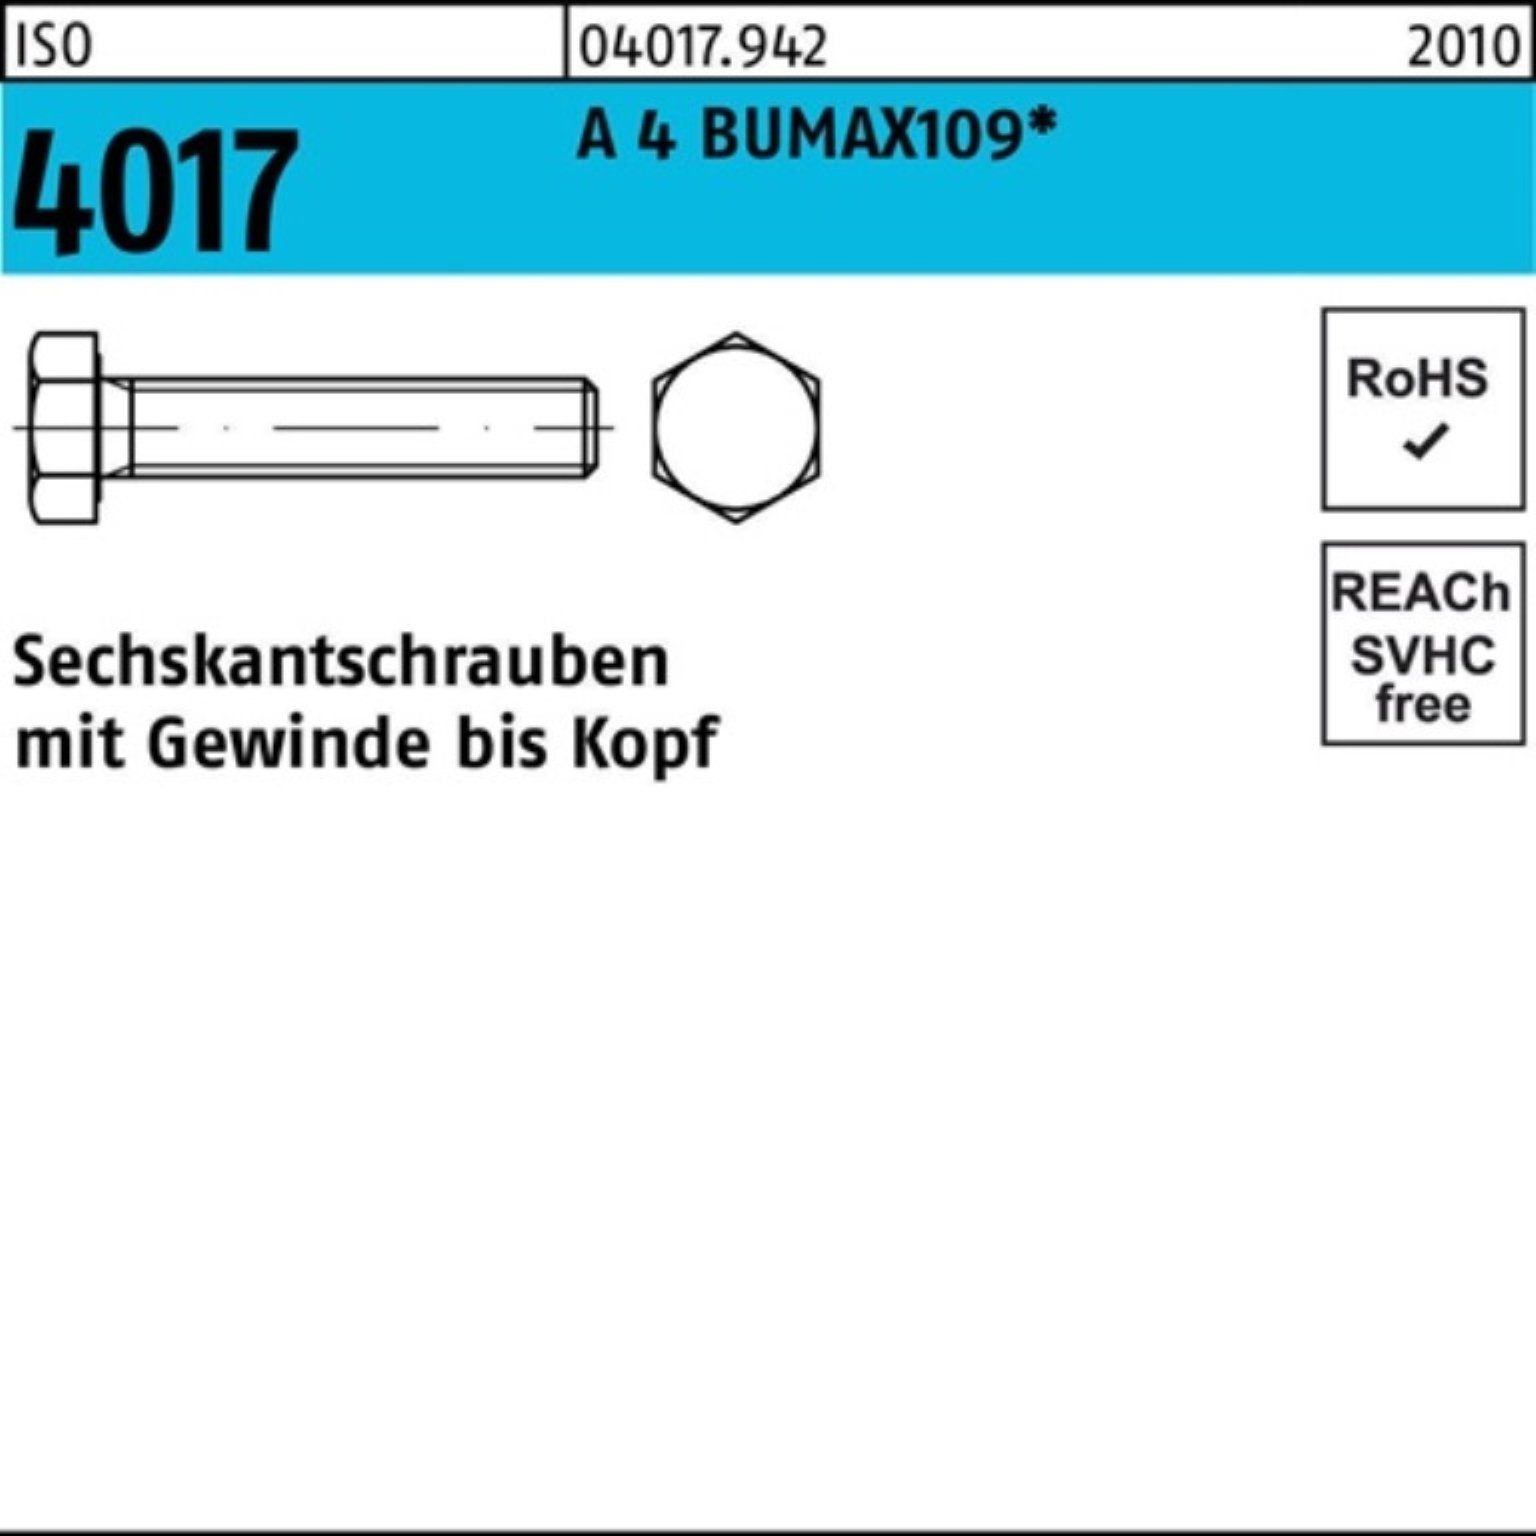 Bufab Sechskantschraube 100er Pack Sechskantschraube ISO 4017 VG M10x 30 A 4 BUMAX109 50 Stüc